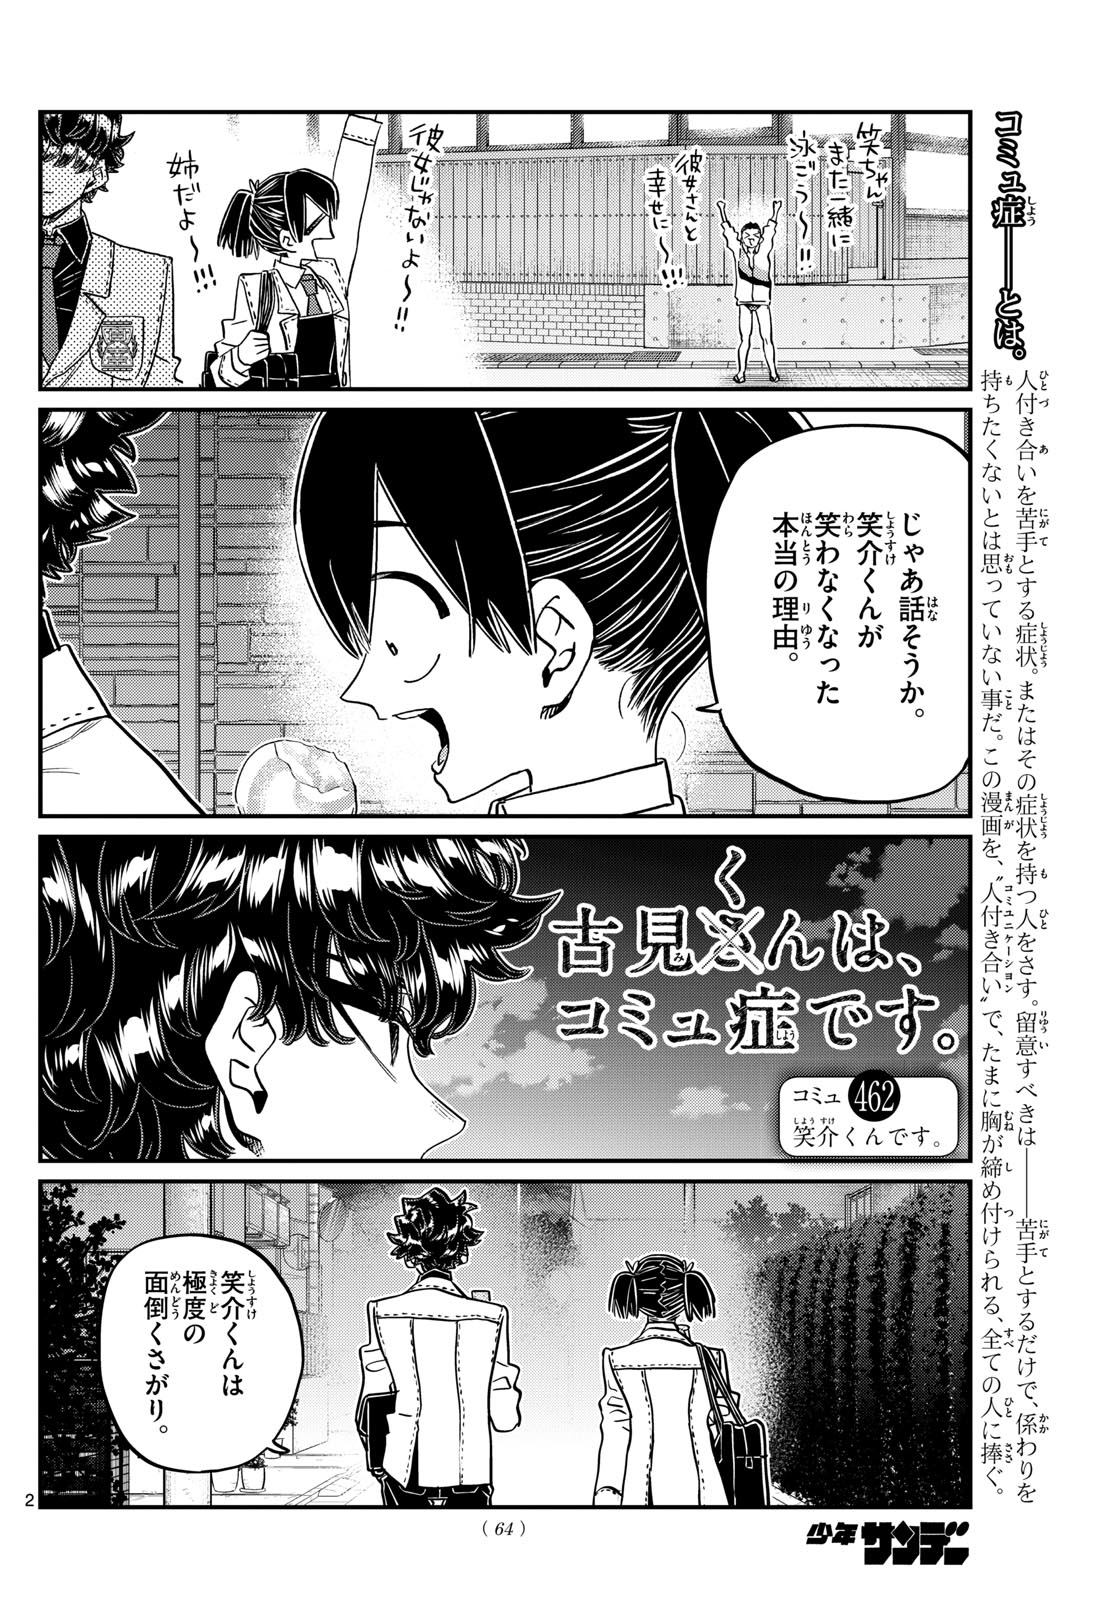 Komi-san wa Komyushou Desu - Chapter 462 - Page 2